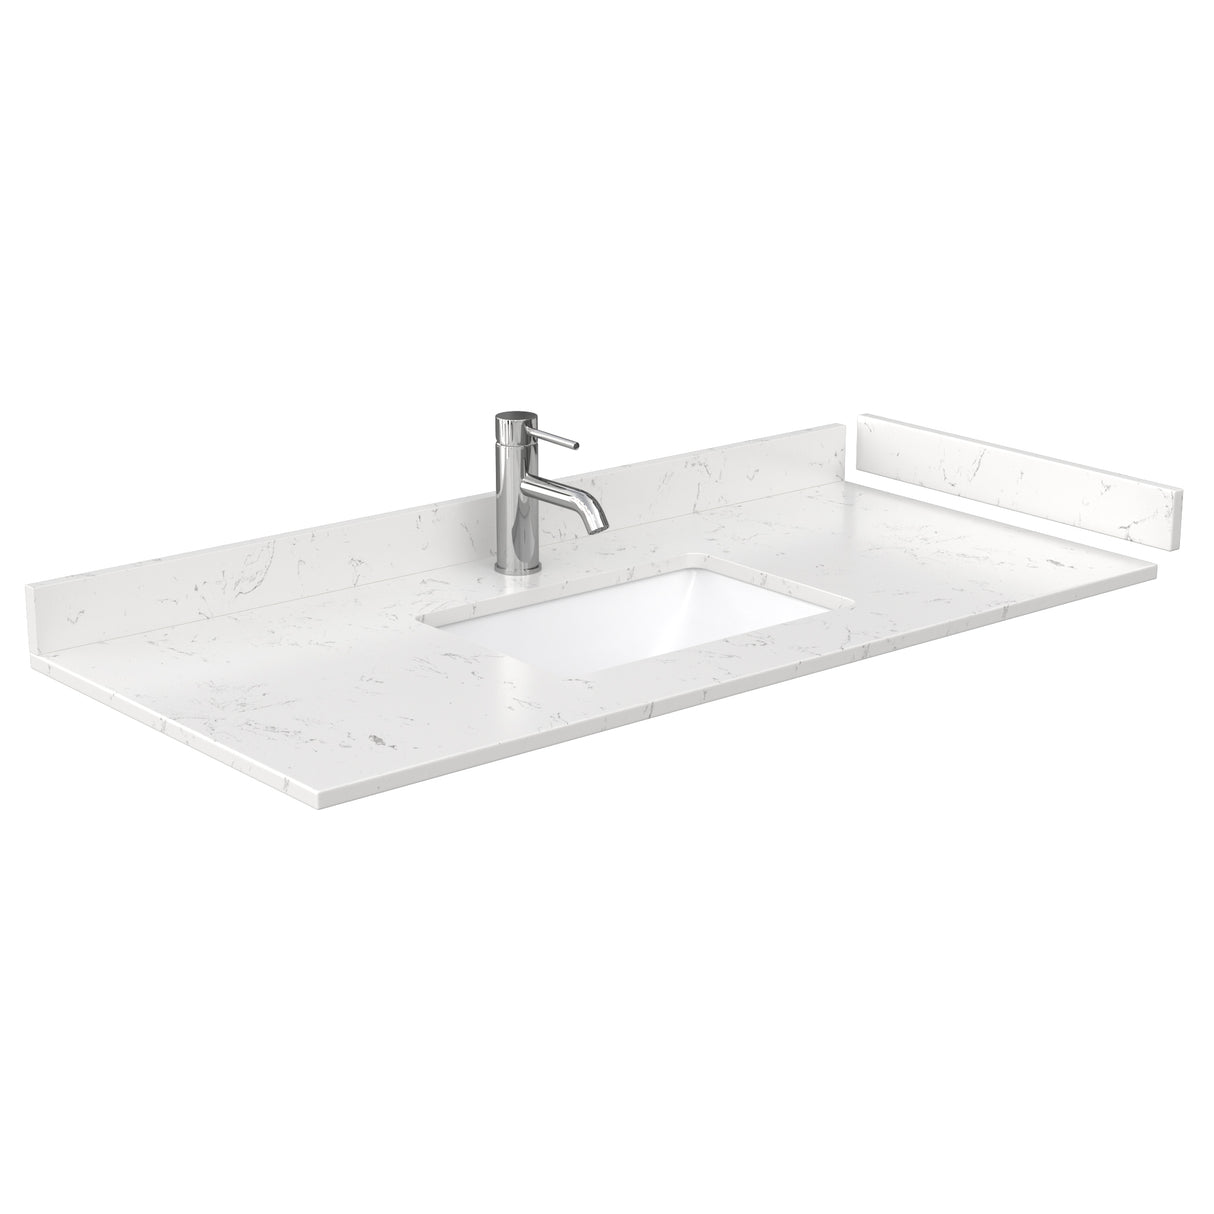 Deborah 48 Inch Single Bathroom Vanity in Dark Espresso Carrara Cultured Marble Countertop Undermount Square Sink No Mirror